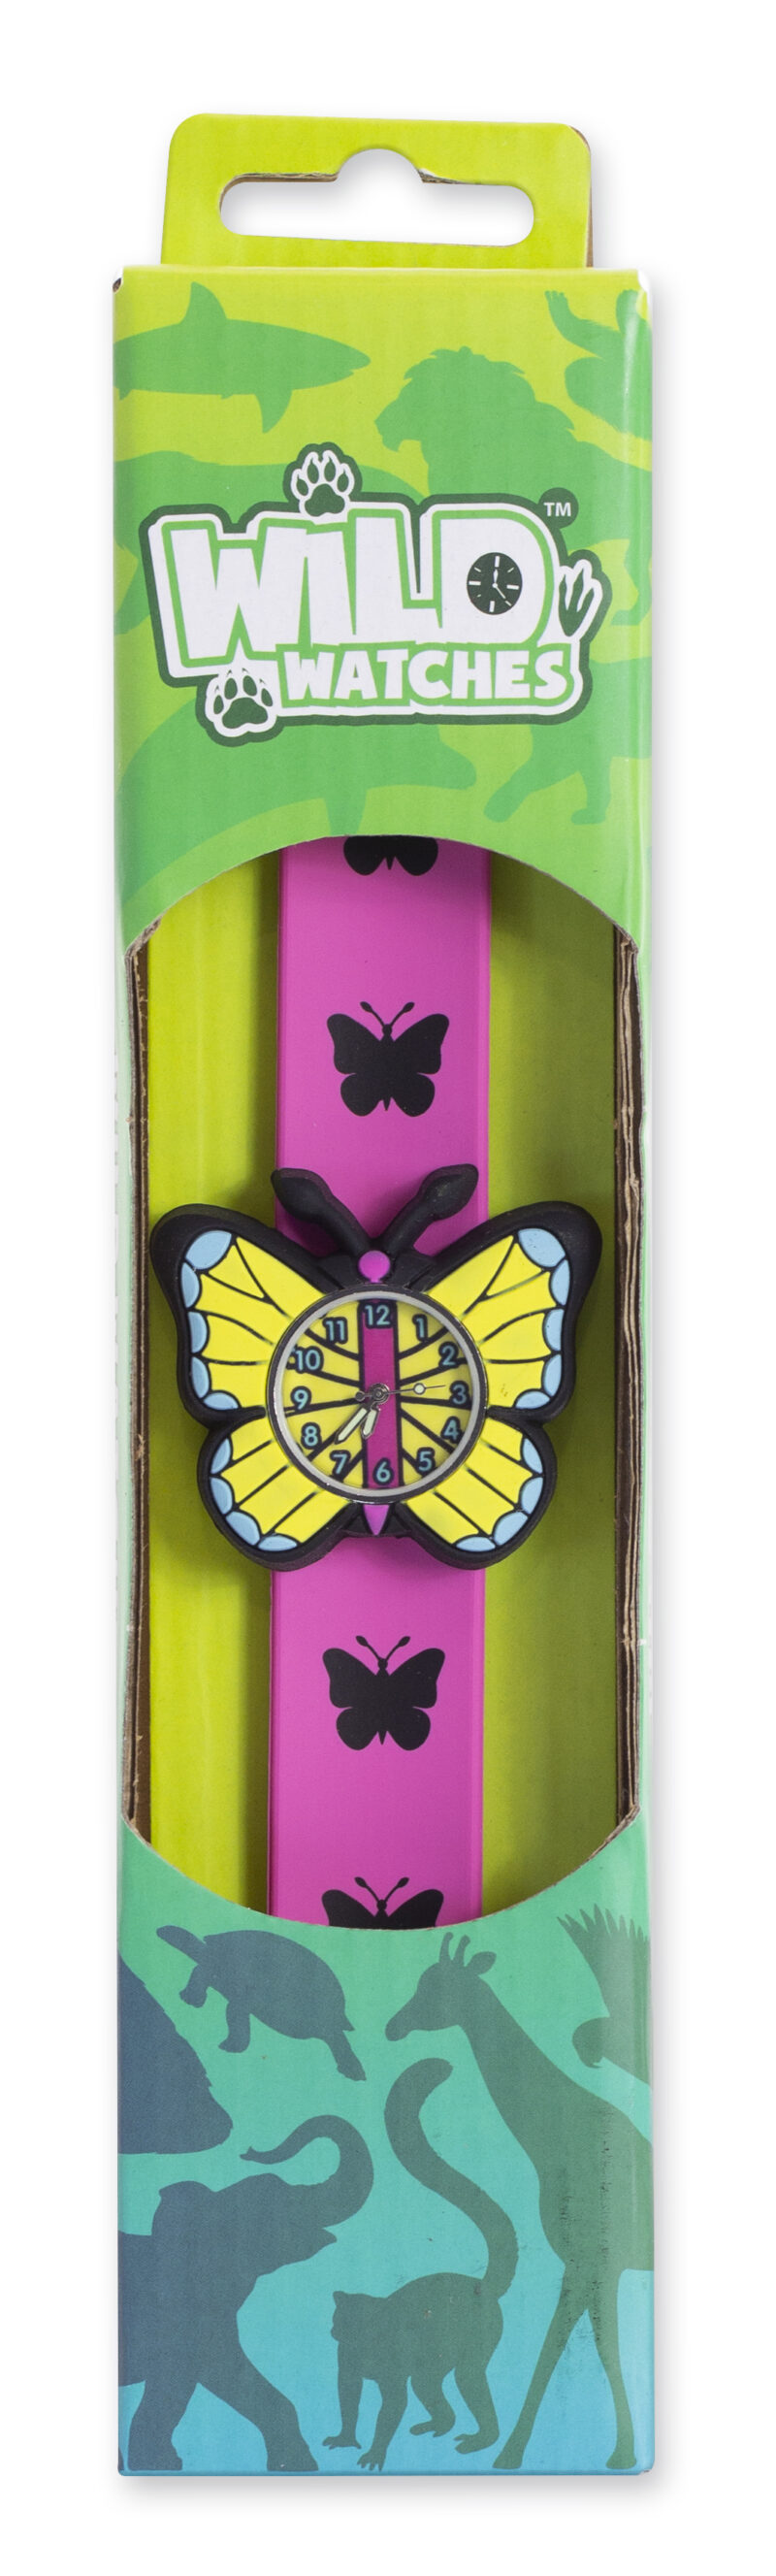 Keycraft Butterfly Wild Watch